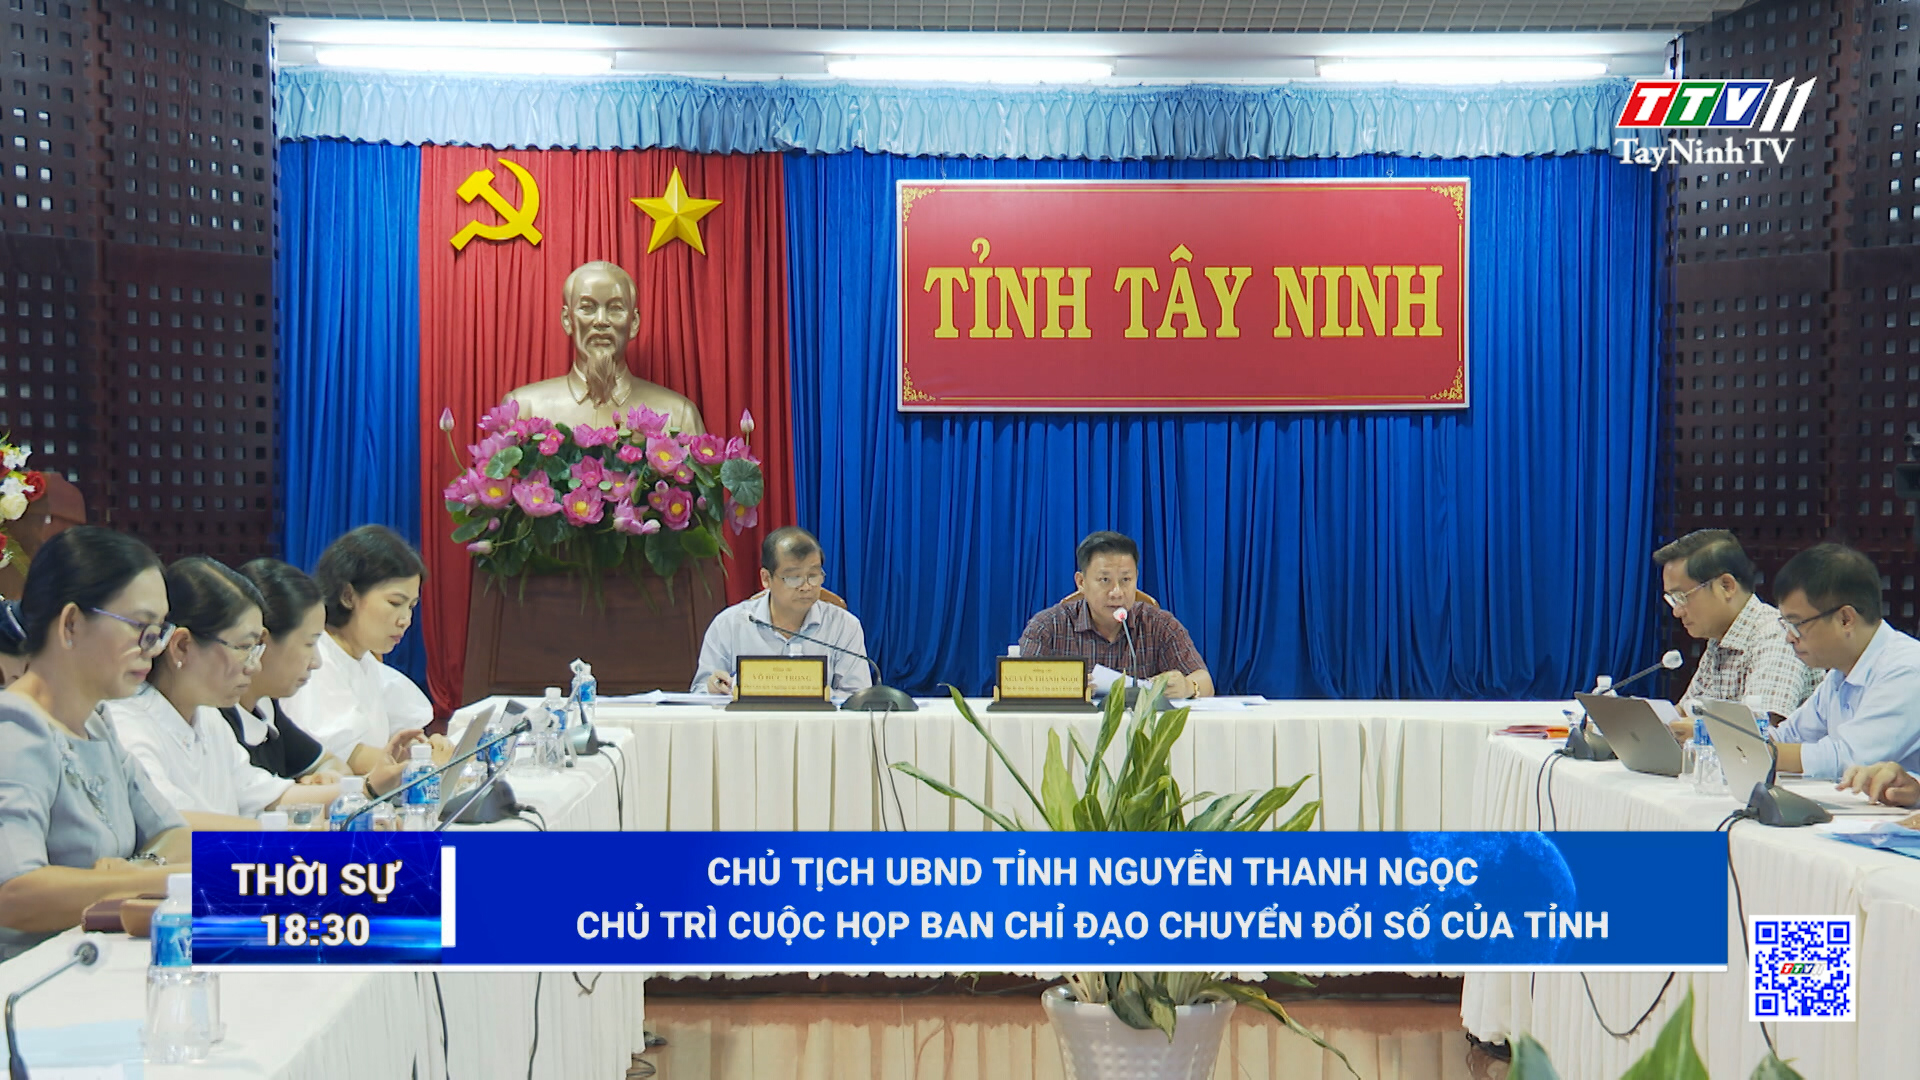 Chủ tịch UBND tỉnh Nguyễn Thanh Ngọc chủ trì cuộc họp Ban Chỉ đạo Chuyển đổi số của tỉnh | TayNinhTV